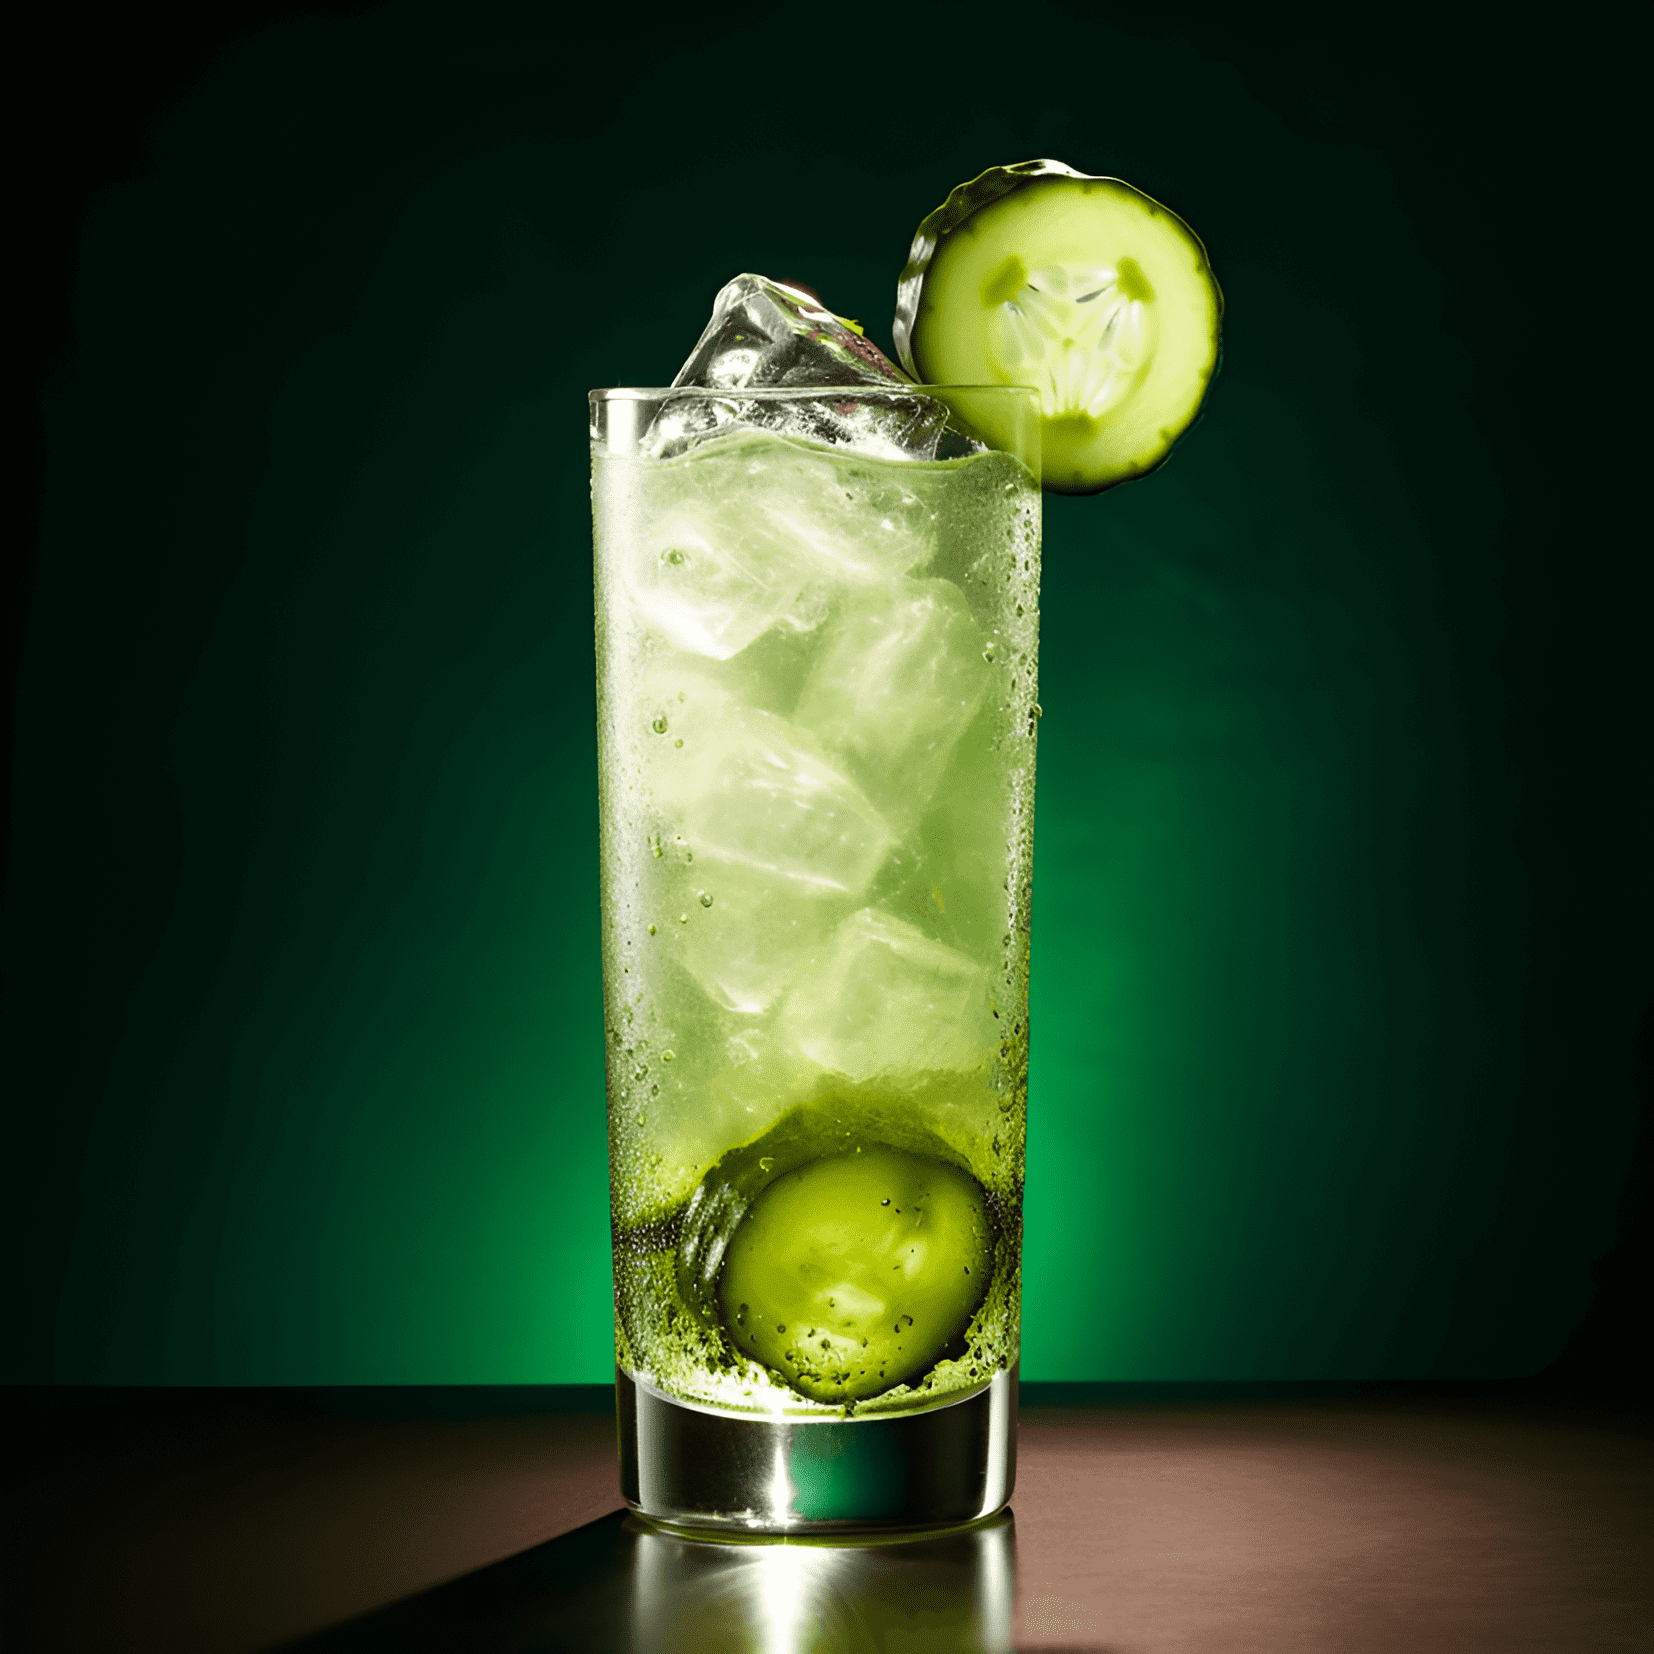 El cóctel Southwest es una bebida compleja y sabrosa, con un toque picante que perdura en el paladar. Es a la vez dulce y ácido, con un toque ahumado del mezcal. El picante del jalapeño se equilibra con la frescura refrescante del pepino y la lima, lo que lo convierte en una bebida refrescante y vigorizante.